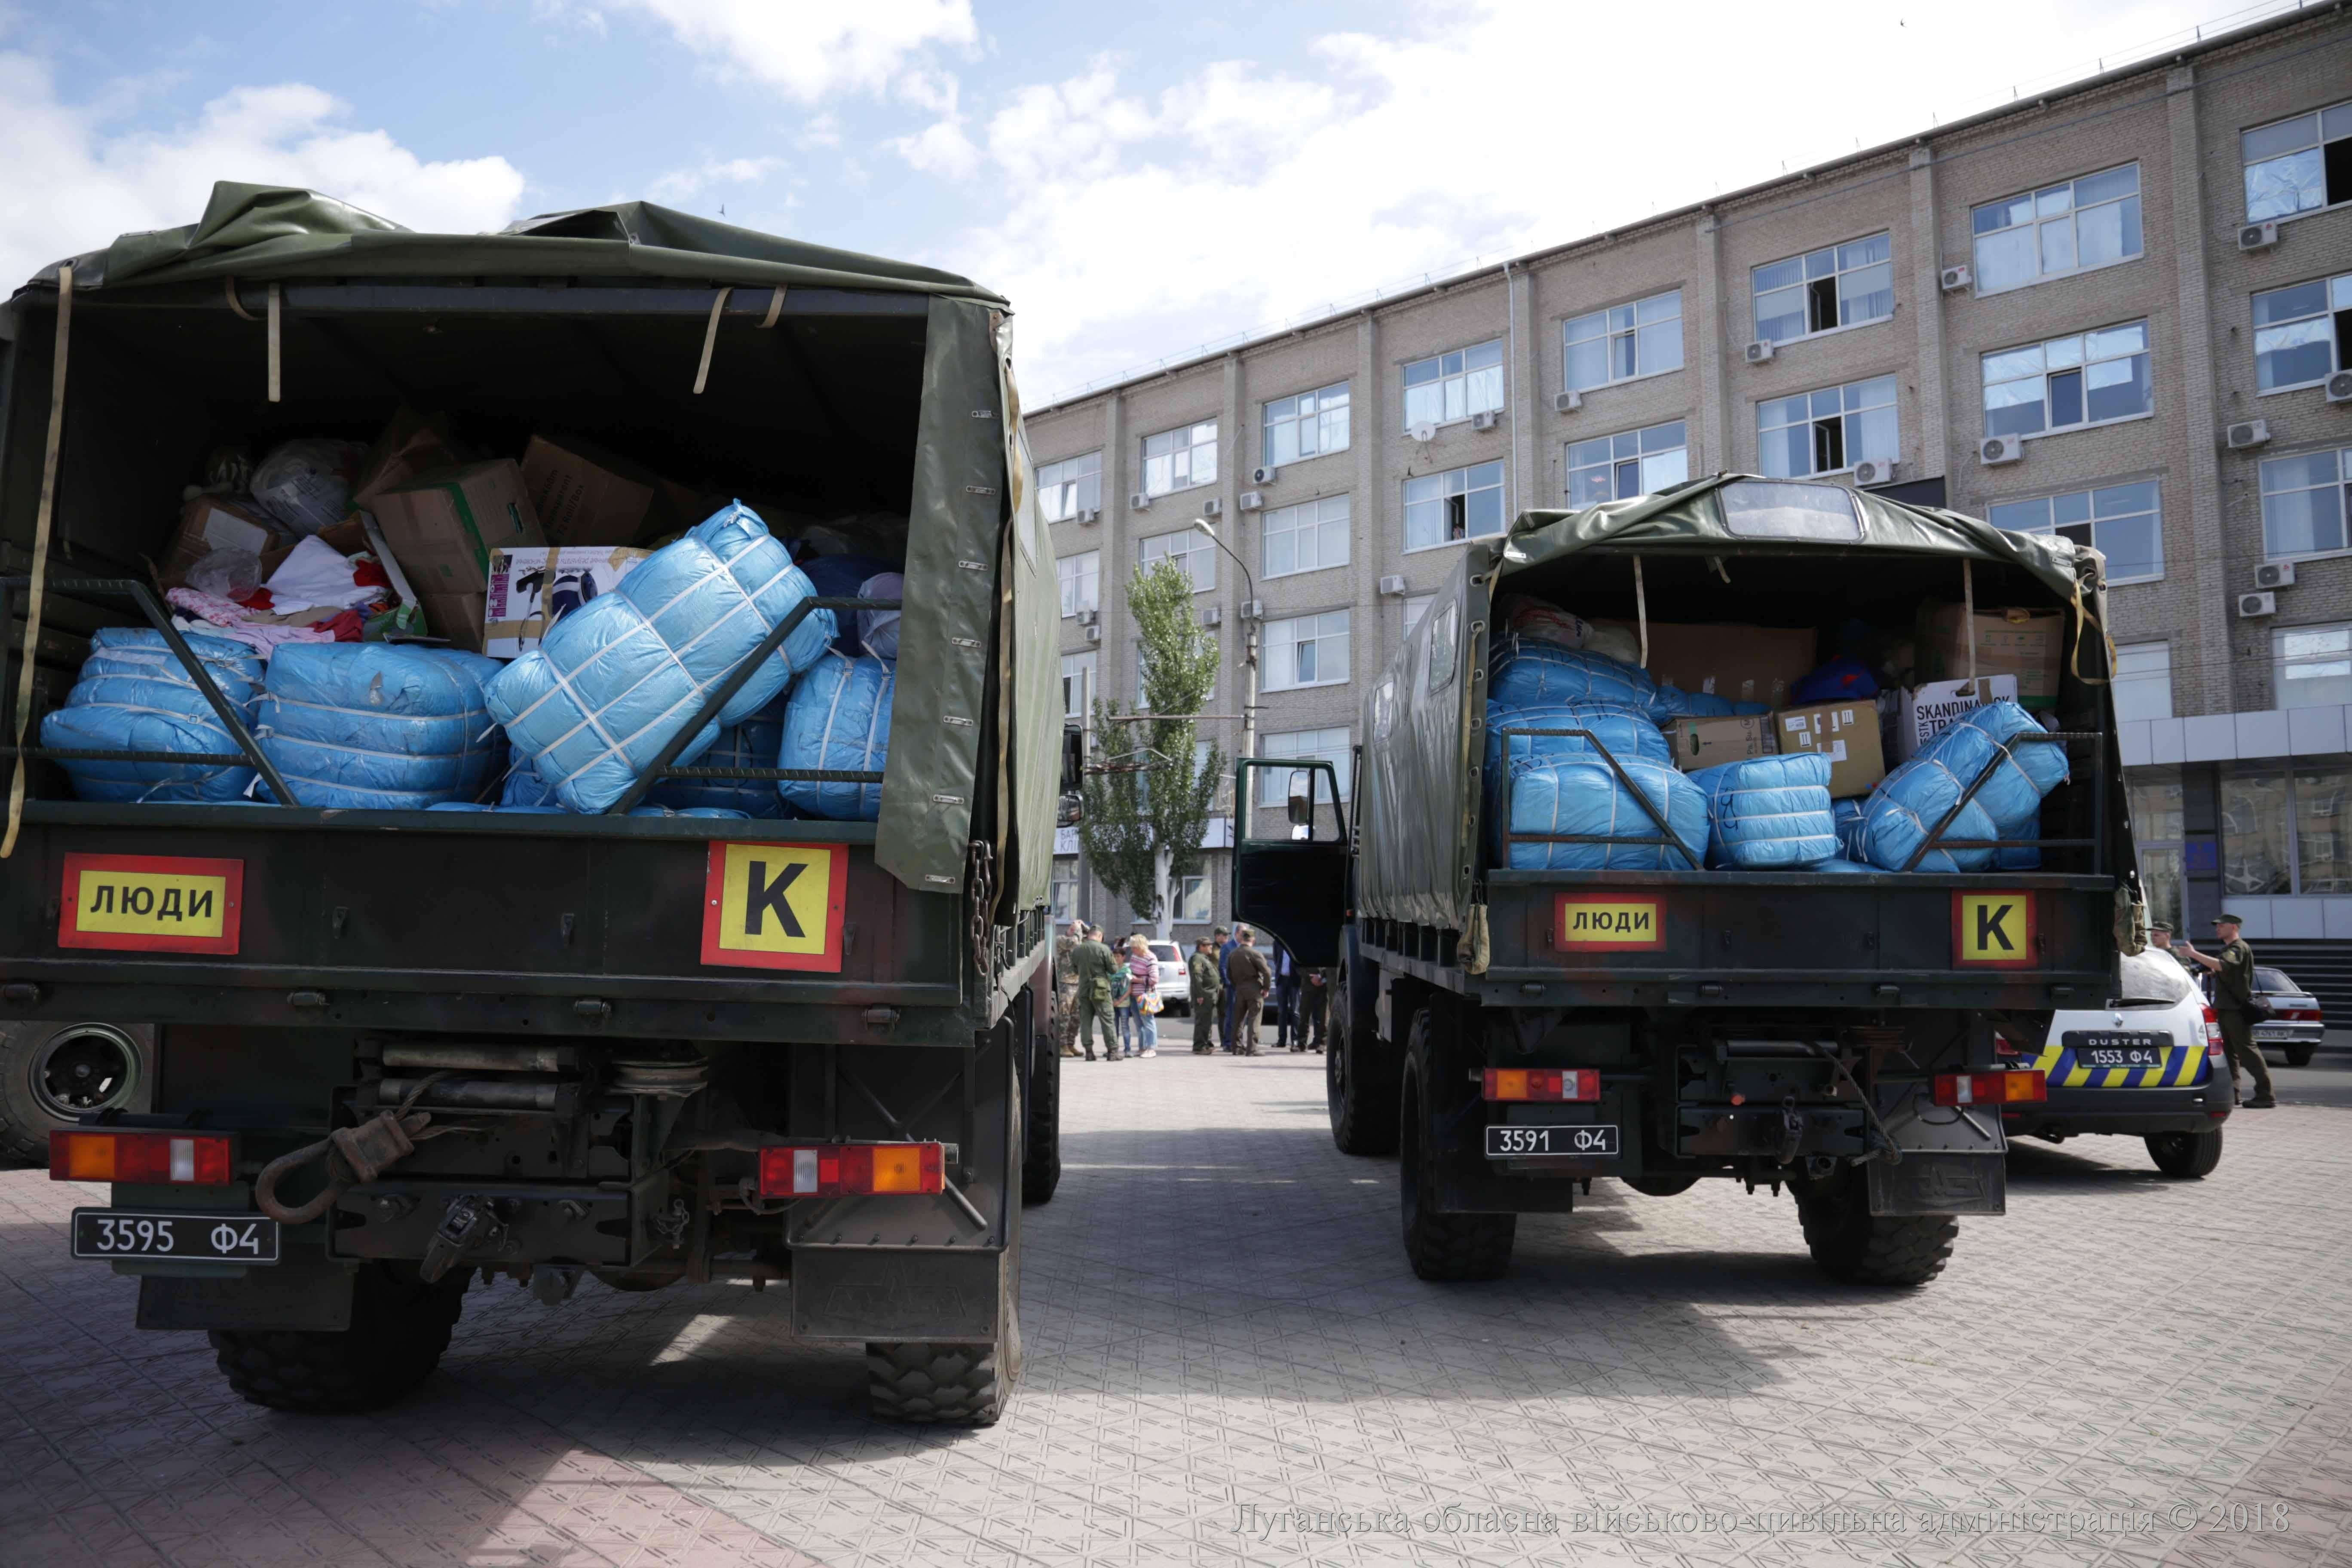 Одна из стран ЕС передала 12 тонн гуманитарной помощи для Луганской области